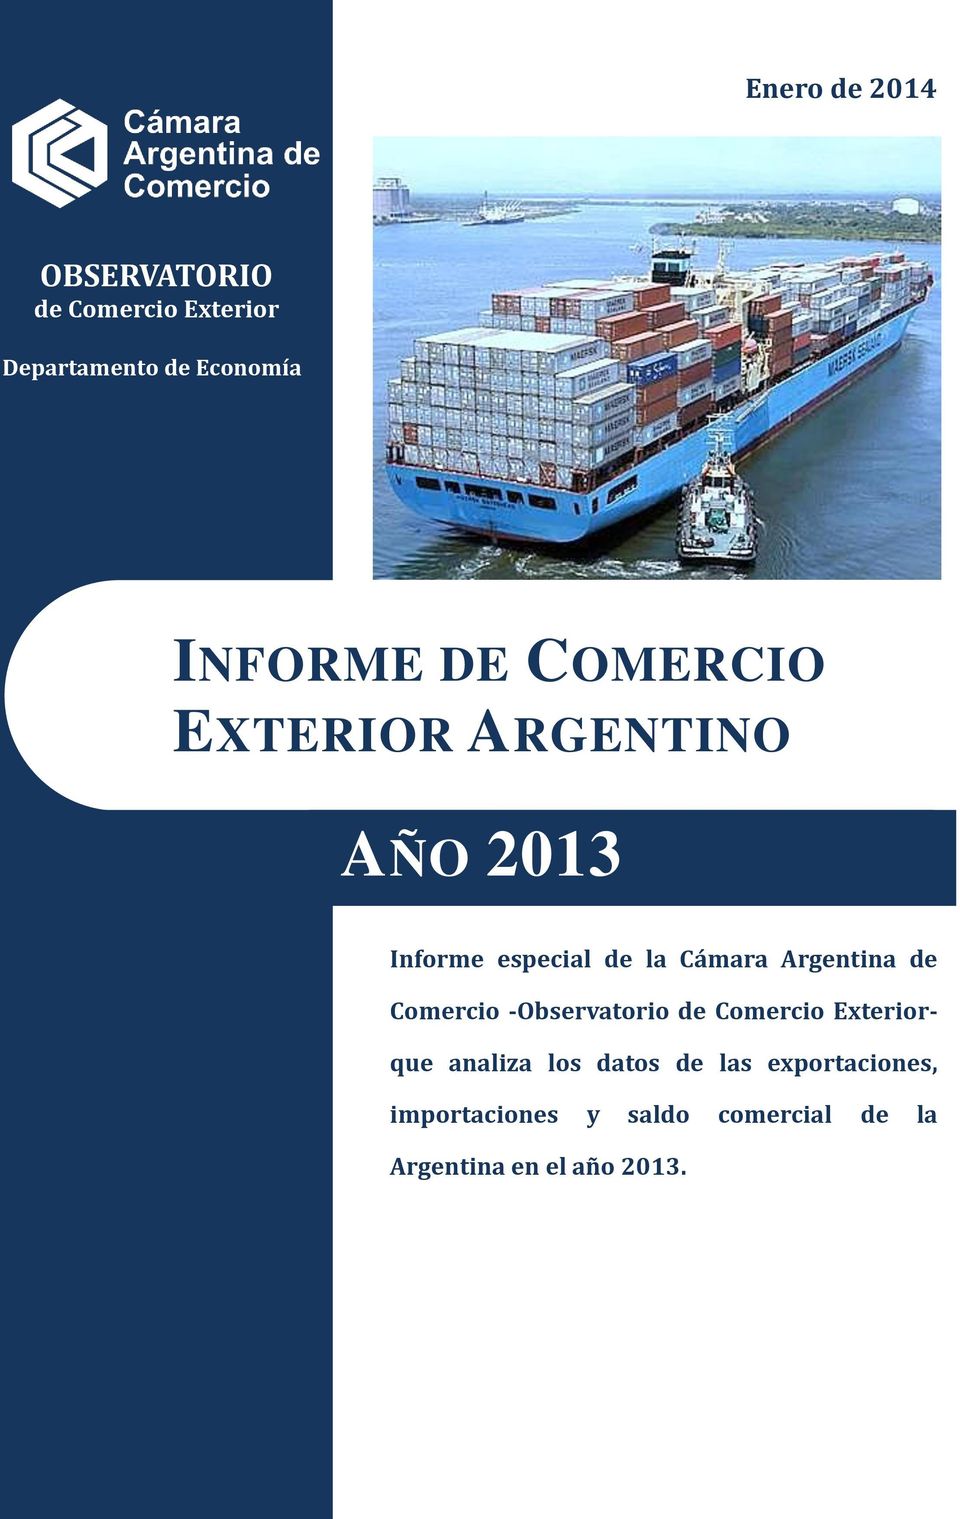 Argentina de Comercio -Observatorio de Comercio Exteriorque analiza los datos